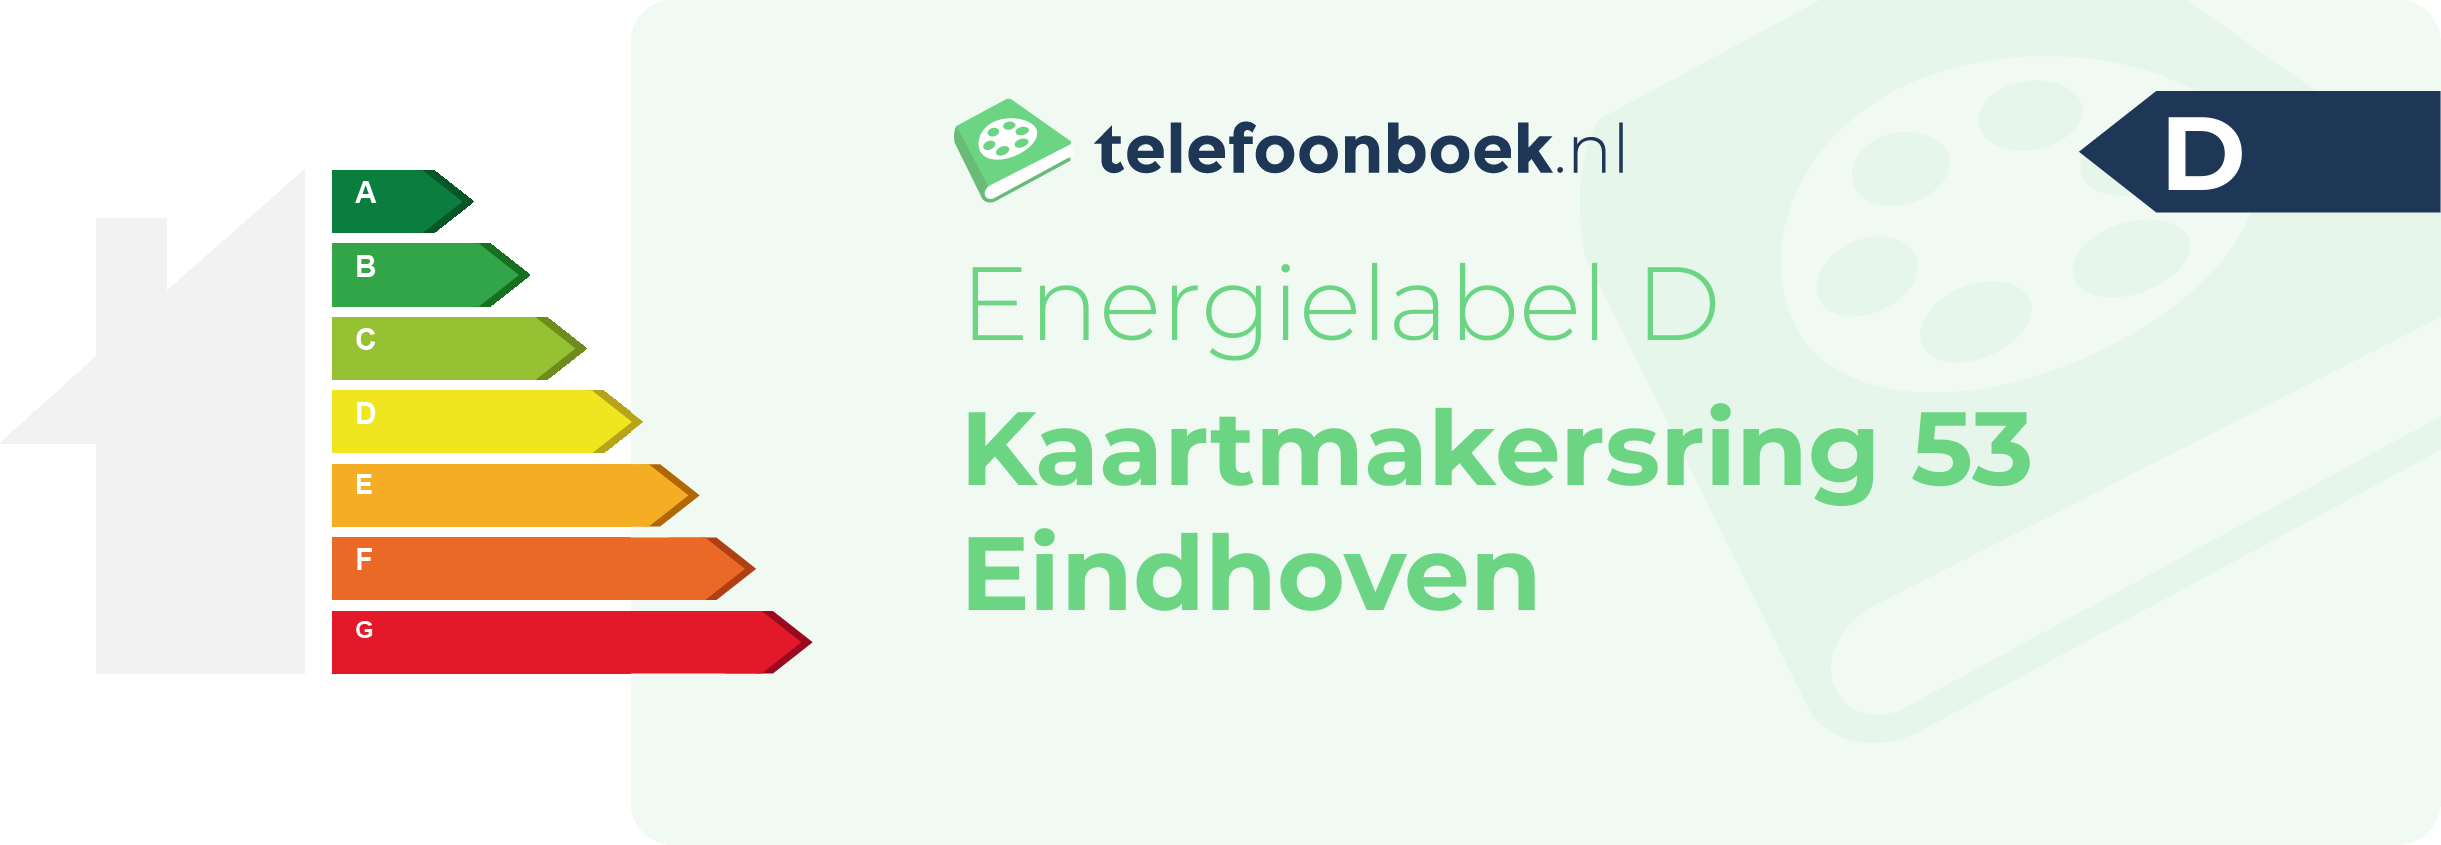 Energielabel Kaartmakersring 53 Eindhoven